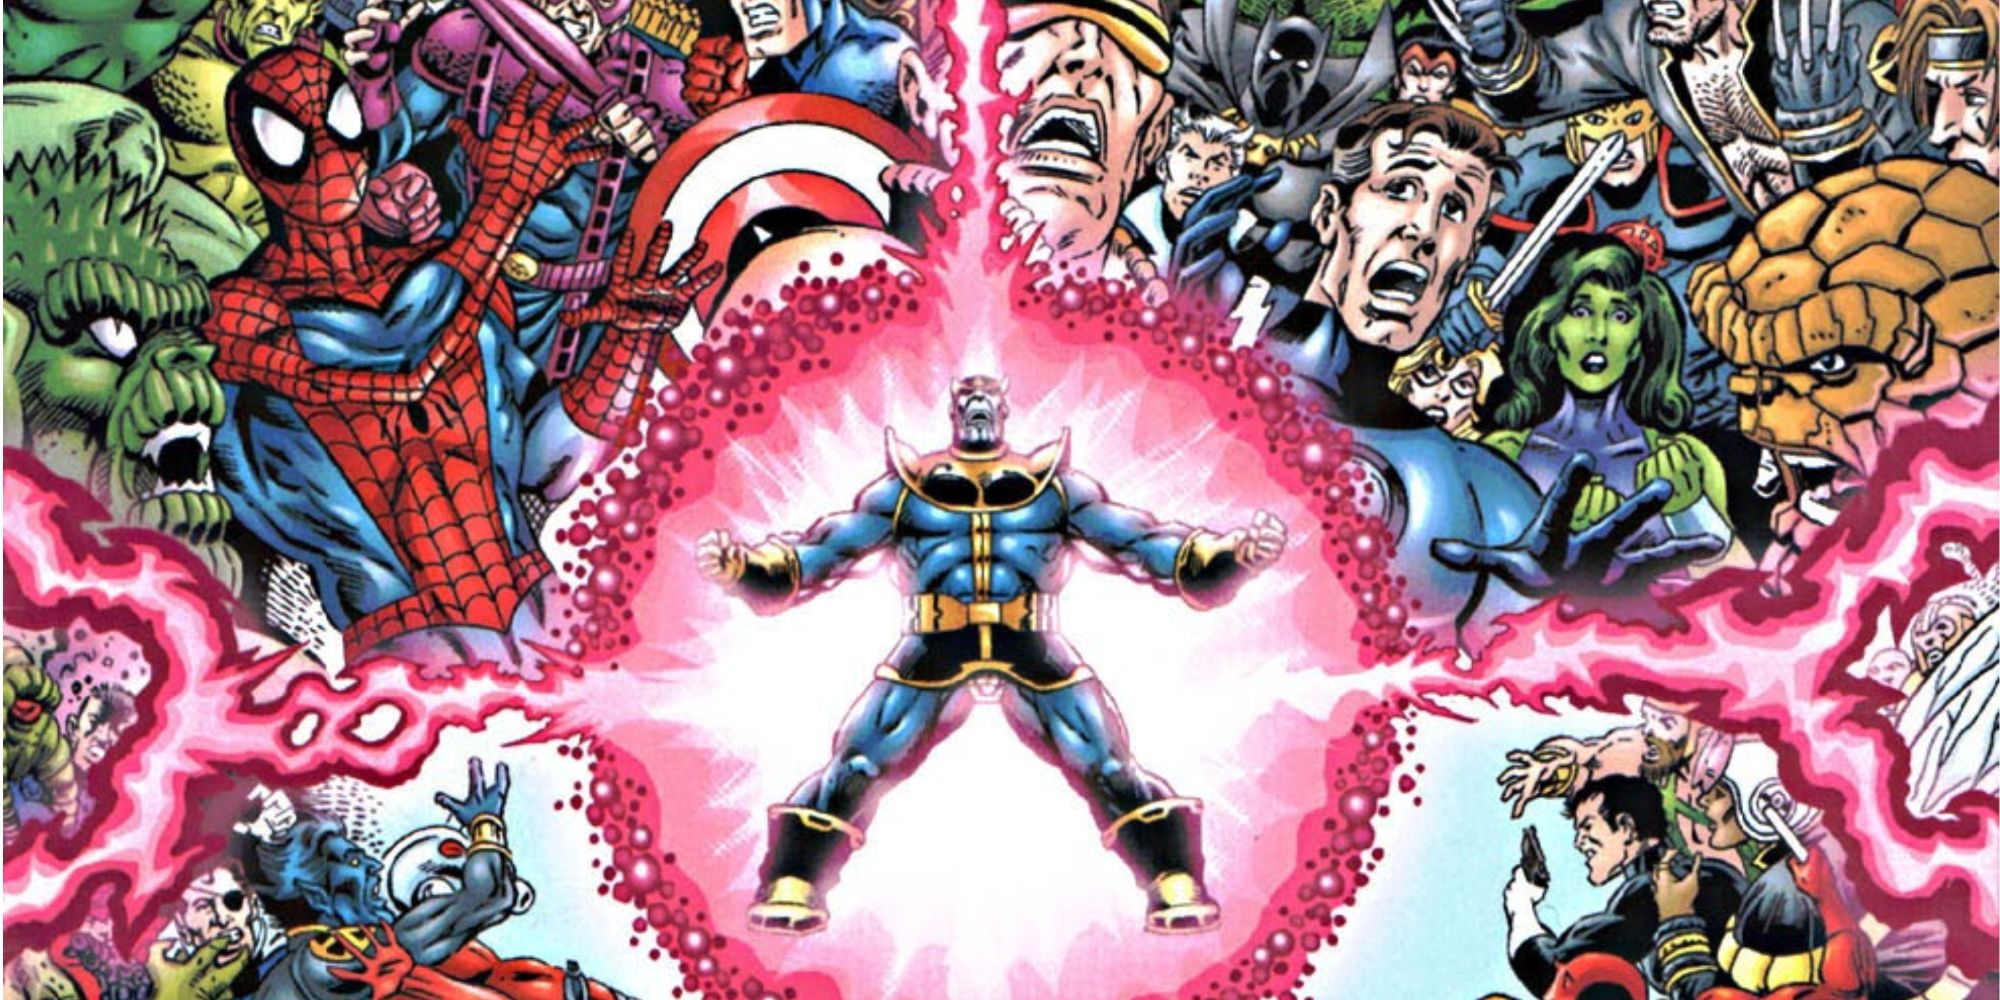 Thanos ataca na história em quadrinhos Marvel Universe: The End.